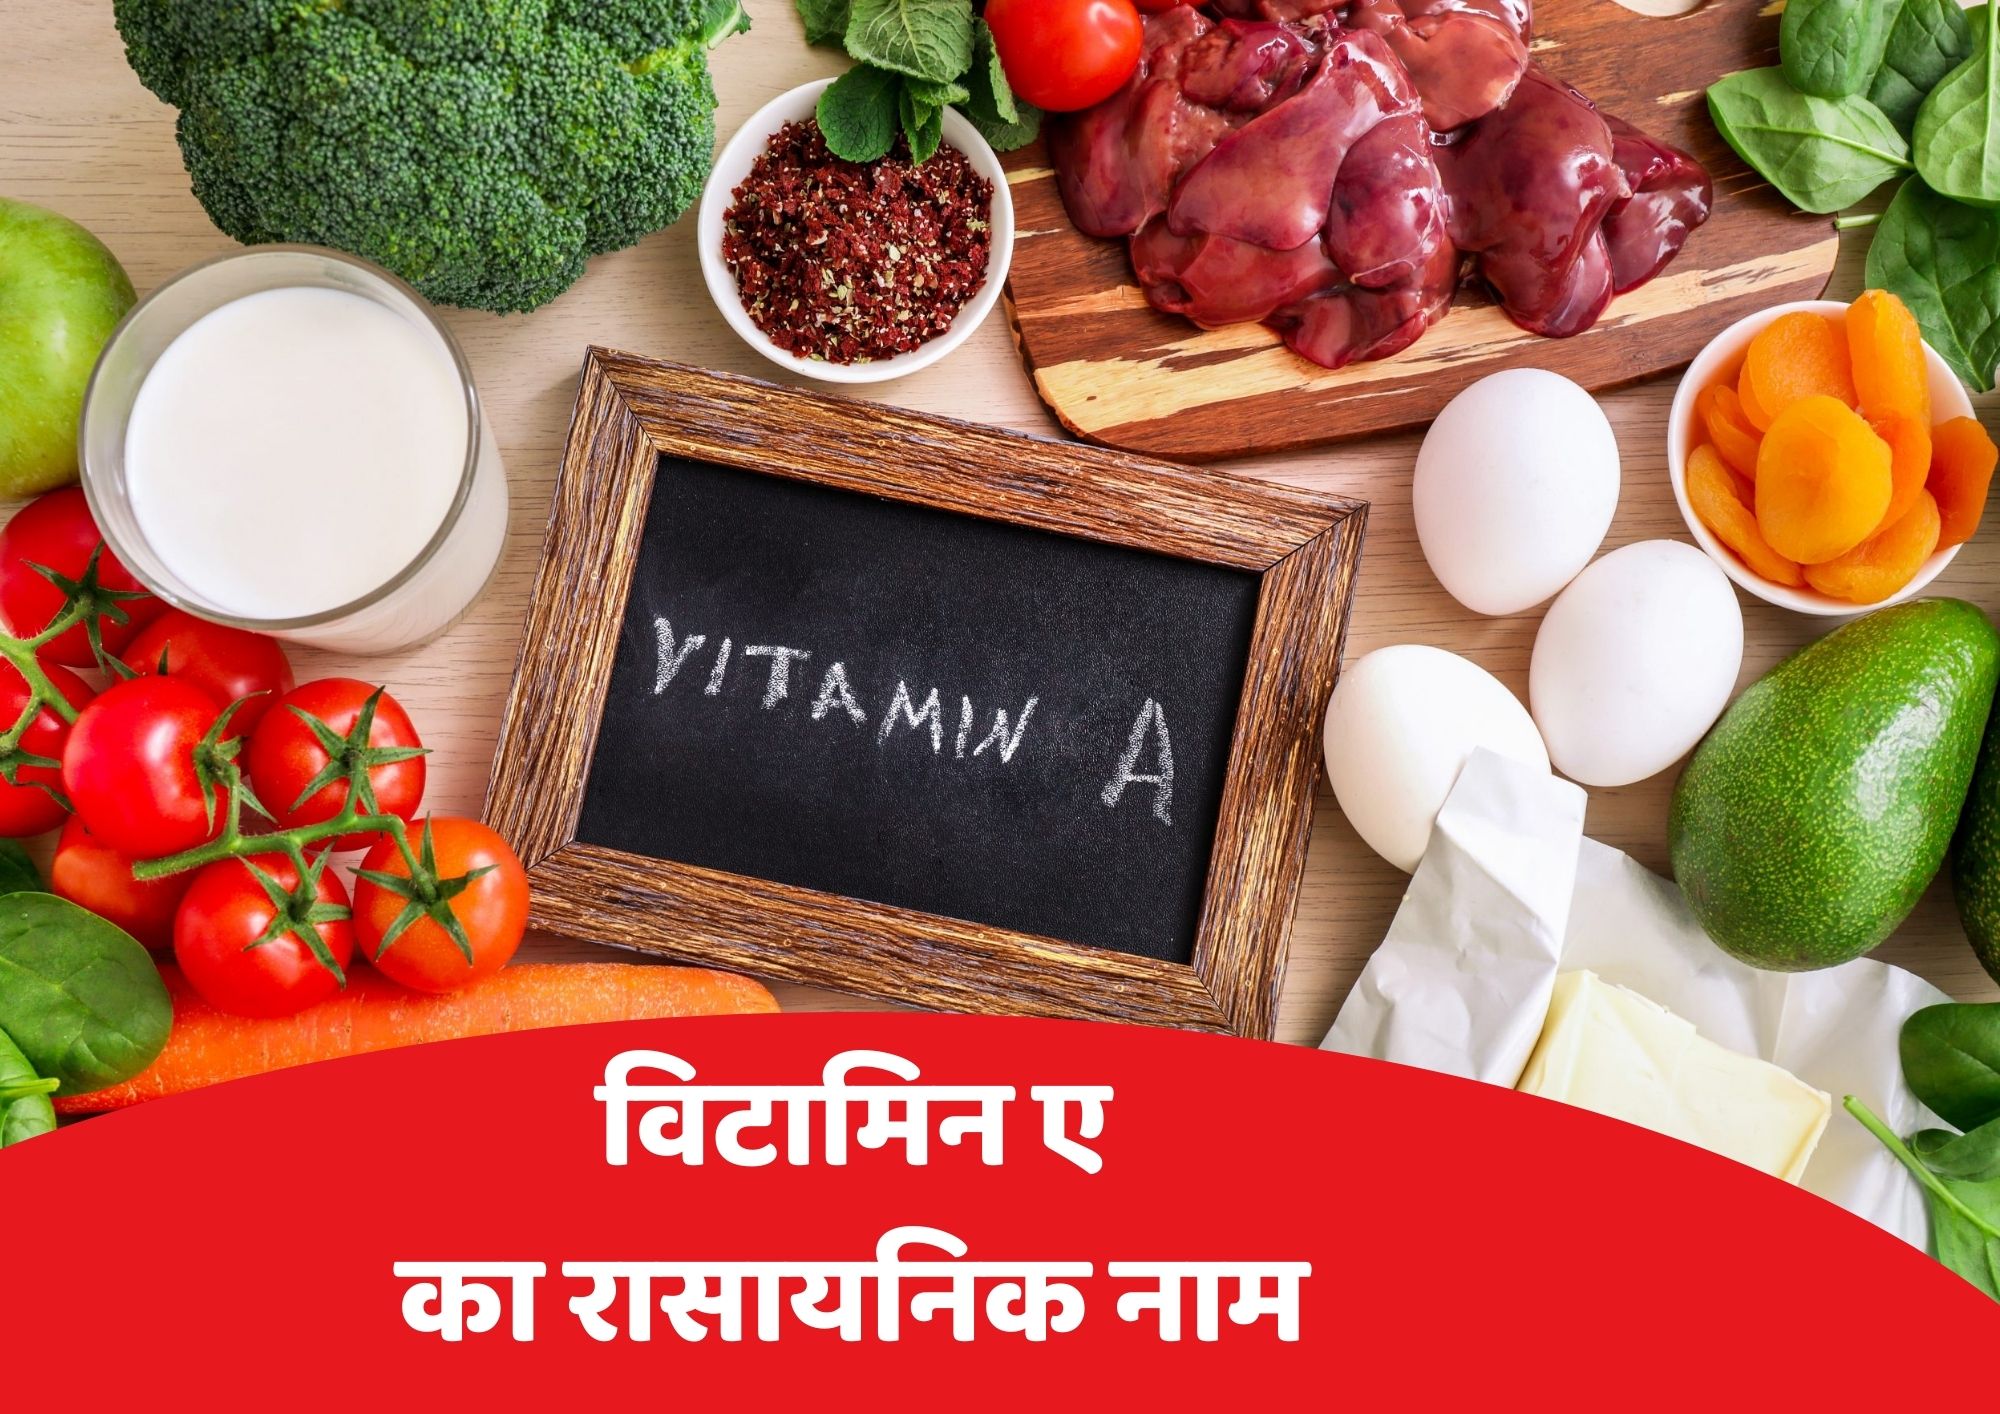 विटामिन ए का रासायनिक नाम क्या है (Vitamin A Chemical Name In Hindi) - Vitamin A Ka Rasayanik Naam Kya Hai